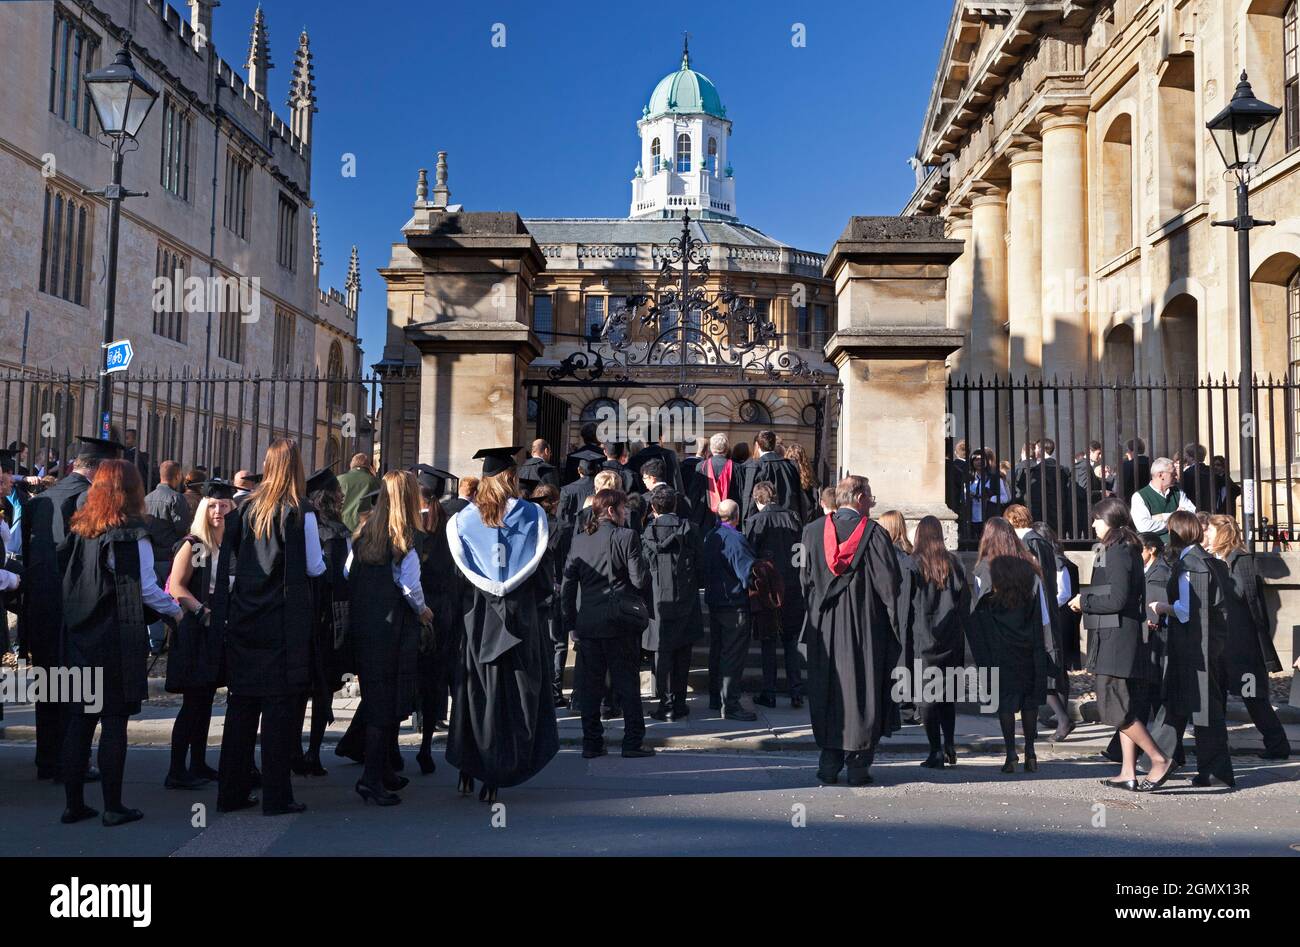 Oxford, England - 2018; jedes Jahr gibt es eine Immatrikulationszeremonie für Studenten der Universität Oxford, komplett mit Pomp, Ritual und viel Freude. Hier Stockfoto